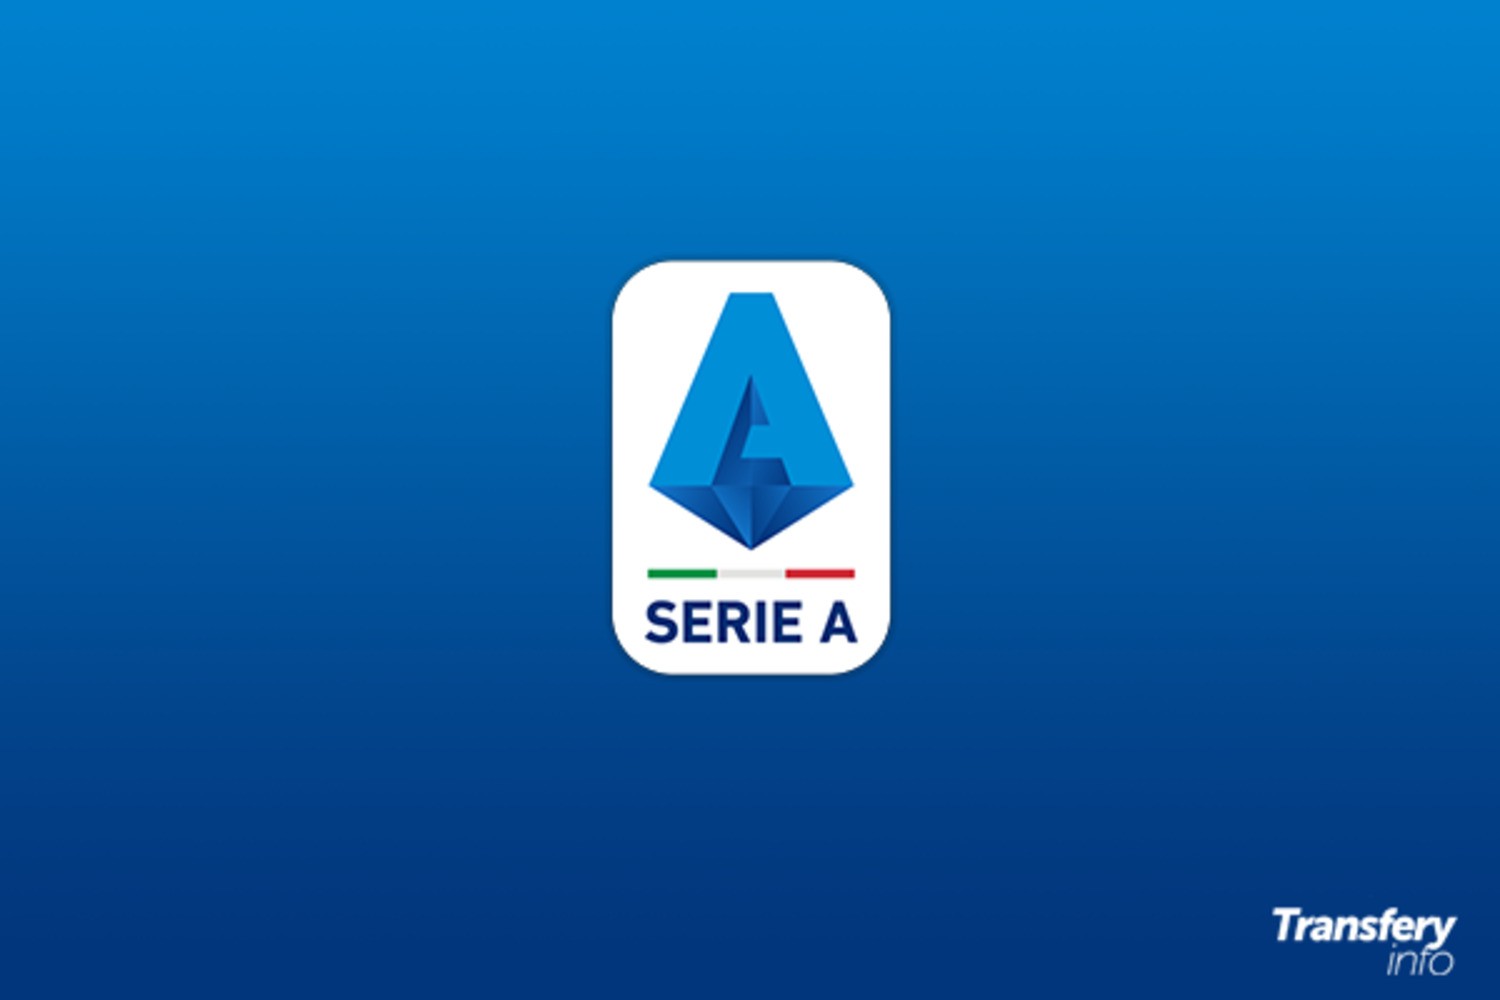 Serie A: Salernitana wraca do włoskiej elity po 22 latach przerwy [OFICJALNIE]